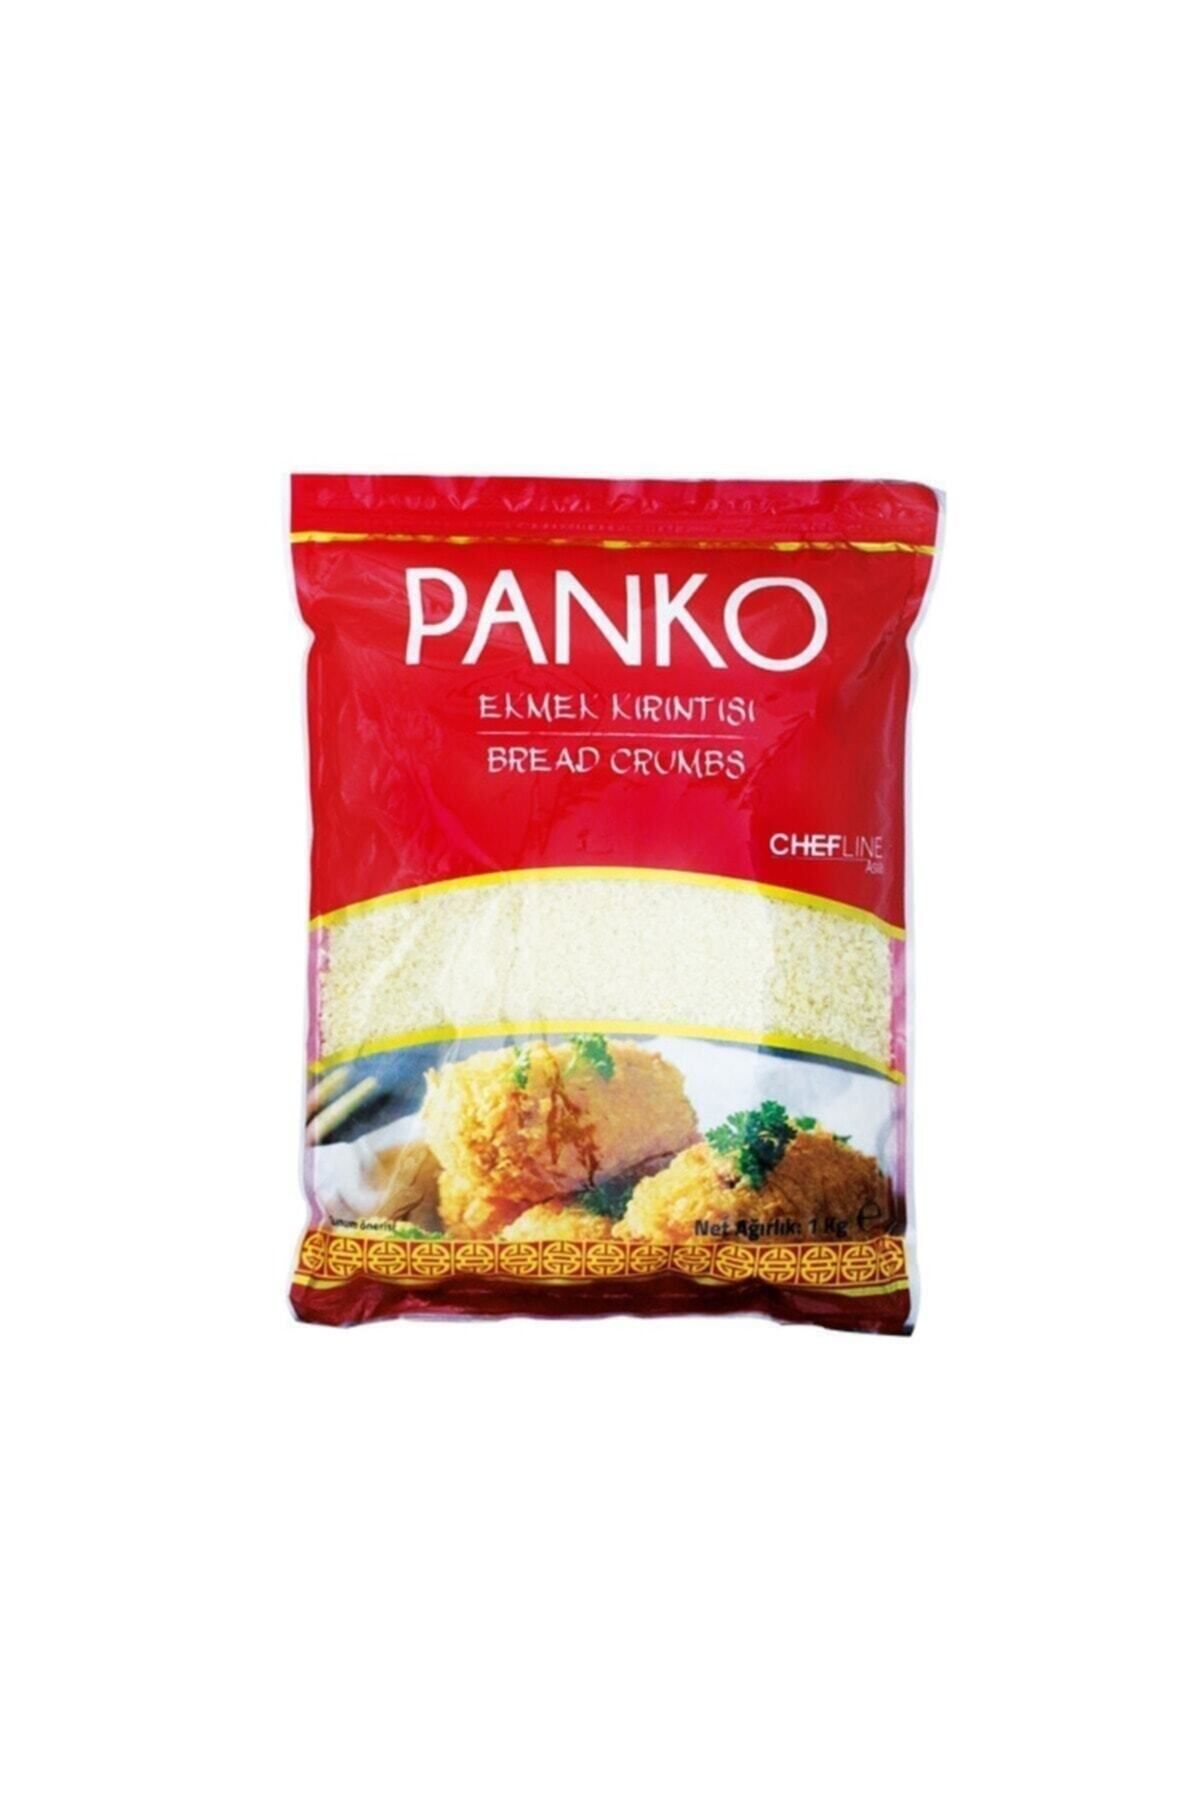 Chefline Asia Panko Klasik Orta Boy Ekmek Kırıntısı 1 kg